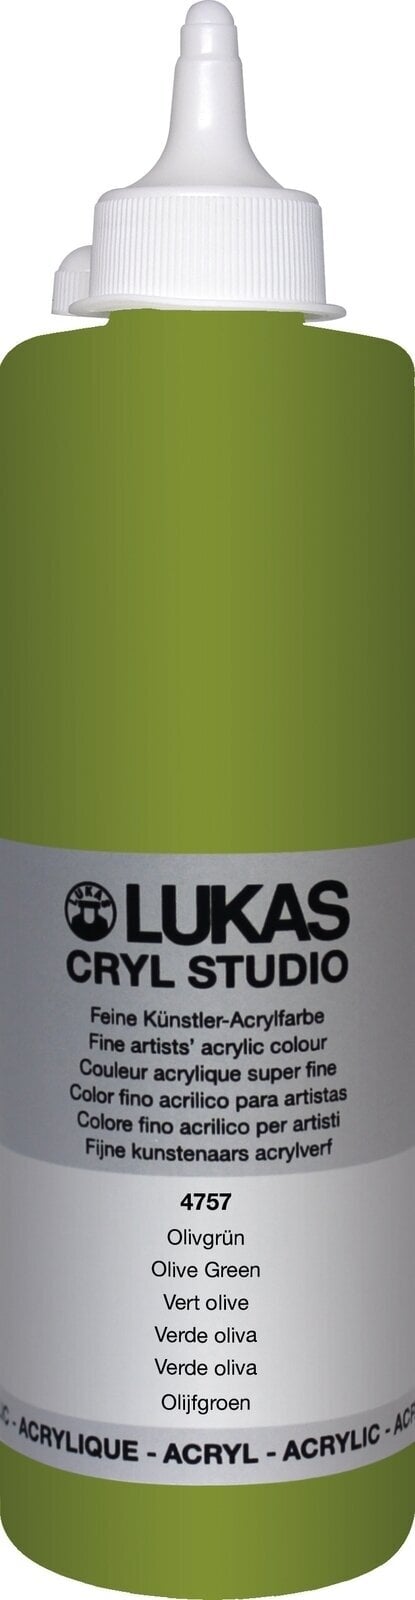 Peinture acrylique Lukas Cryl Studio Acrylic Paint Plastic Bottle Peinture acrylique Olive Green 500 ml 1 pc